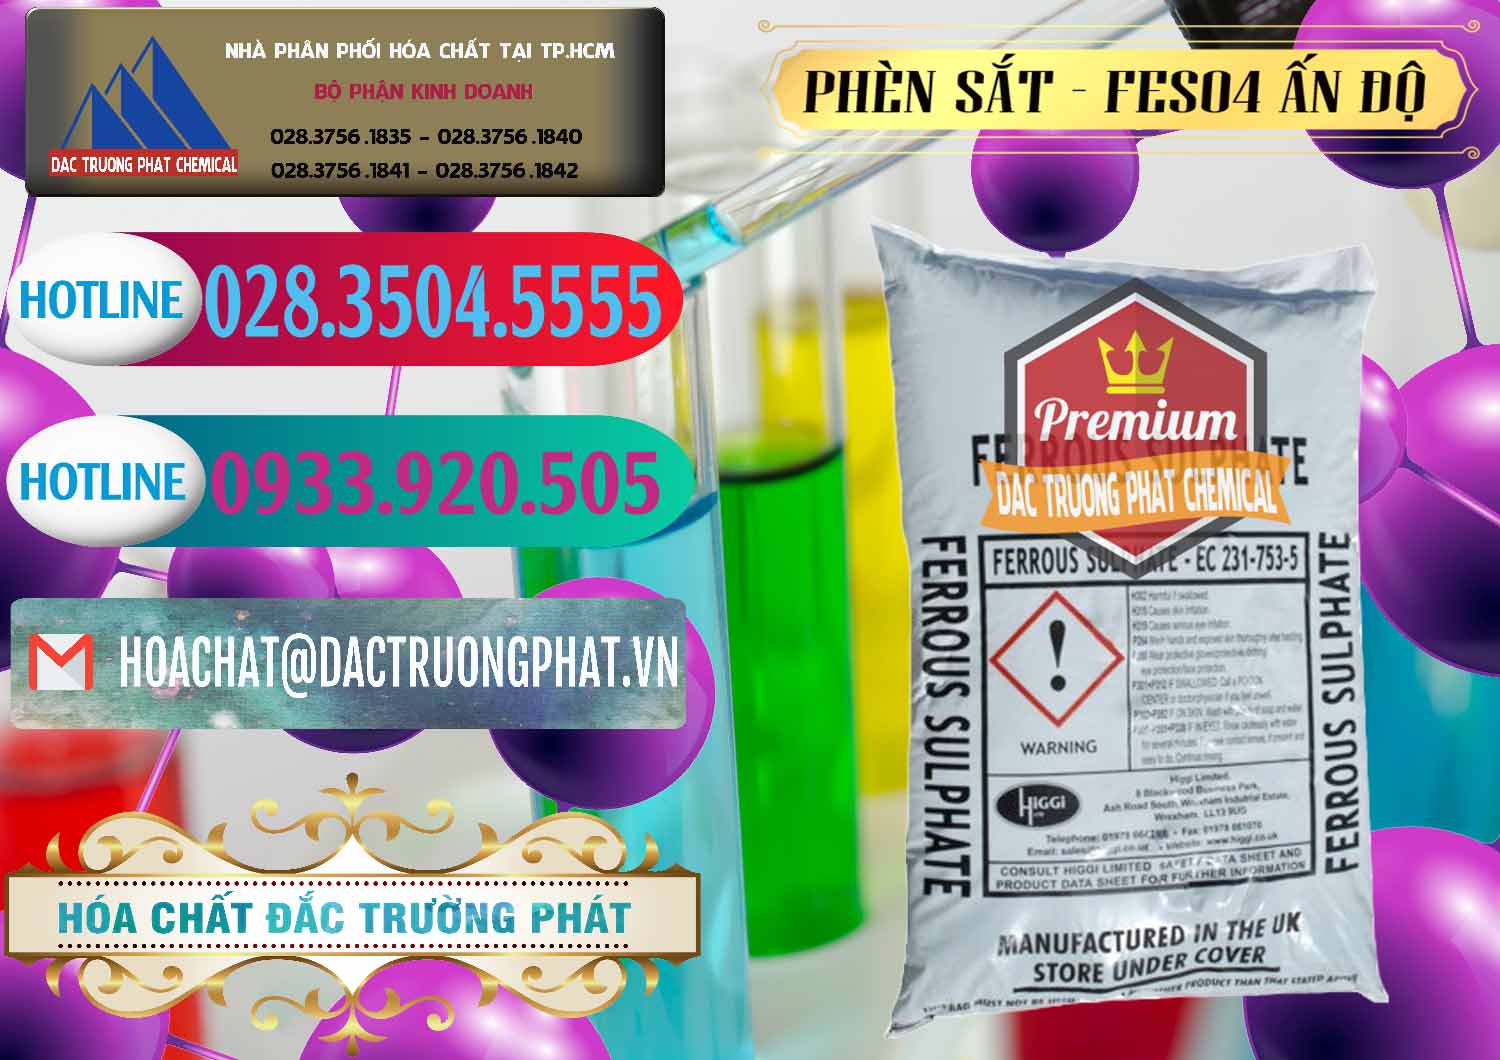 Cung cấp _ bán Phèn Sắt - FeSO4.7H2O Ấn Độ India - 0354 - Nơi chuyên kinh doanh _ phân phối hóa chất tại TP.HCM - truongphat.vn